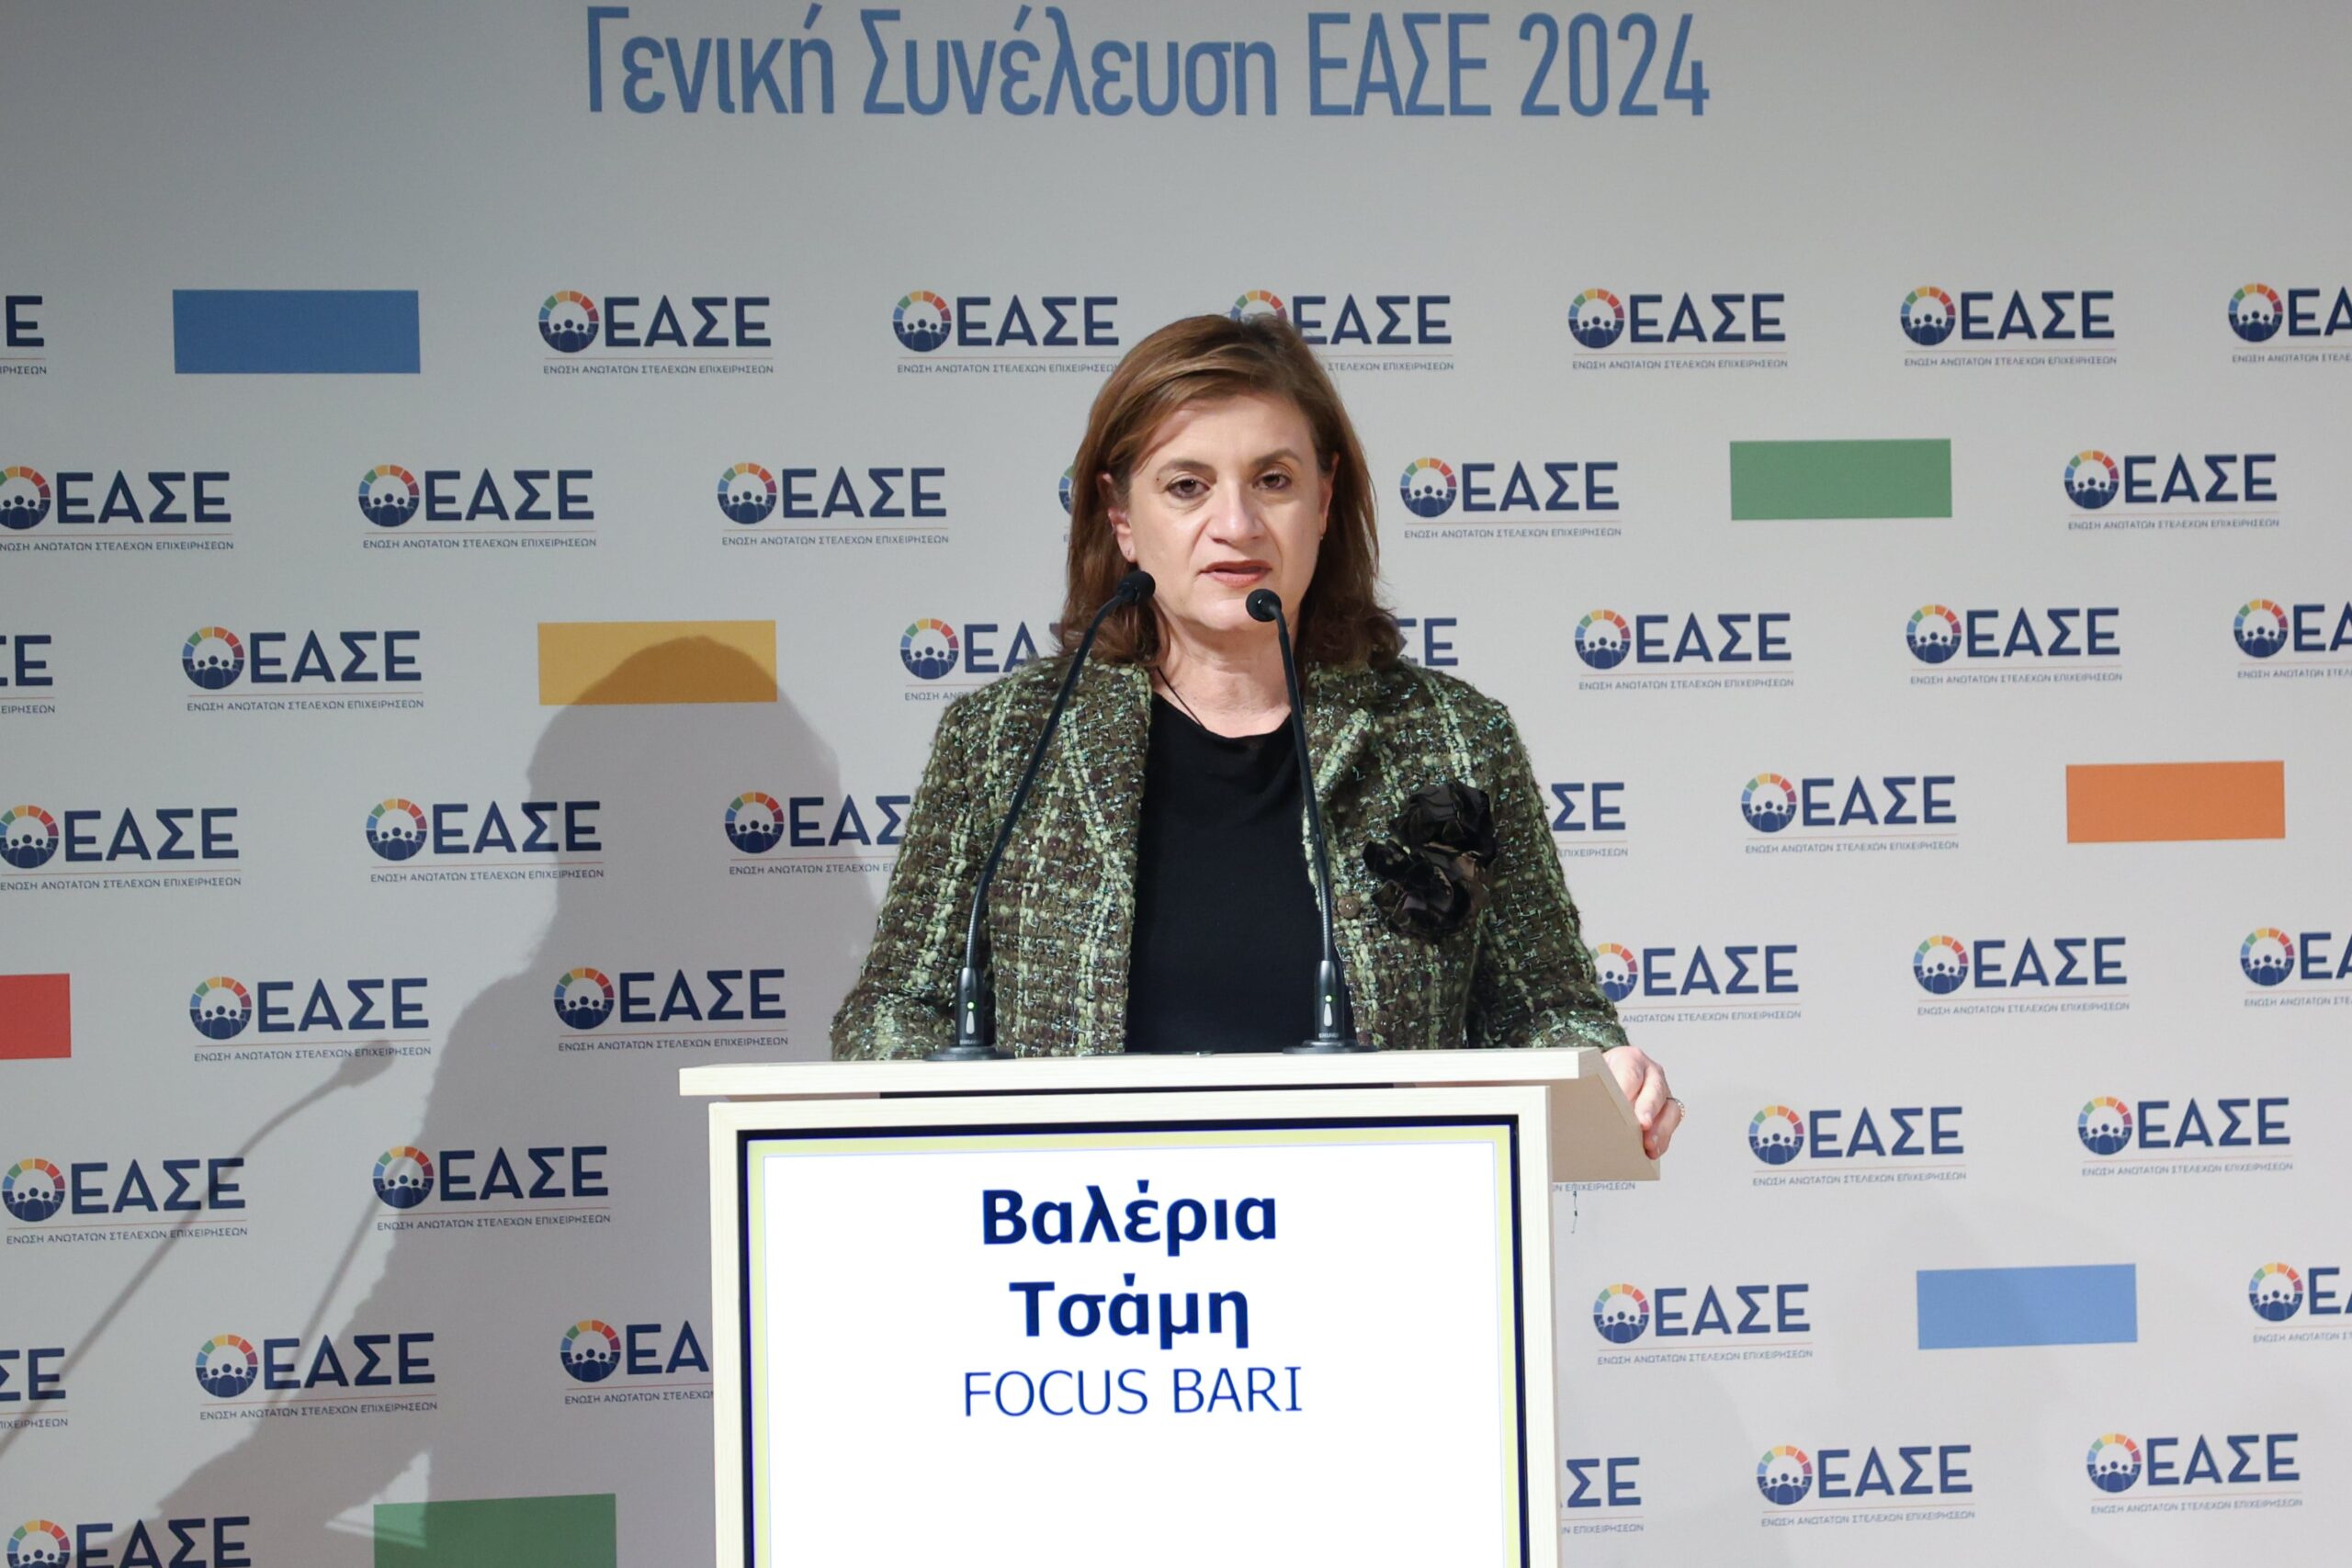 Η Βαλέρια Τσάμη της Focus Bari, Γενική Γραμματέας ΔΣ της ΕΑΣΕ για την τριετία 2024-2026